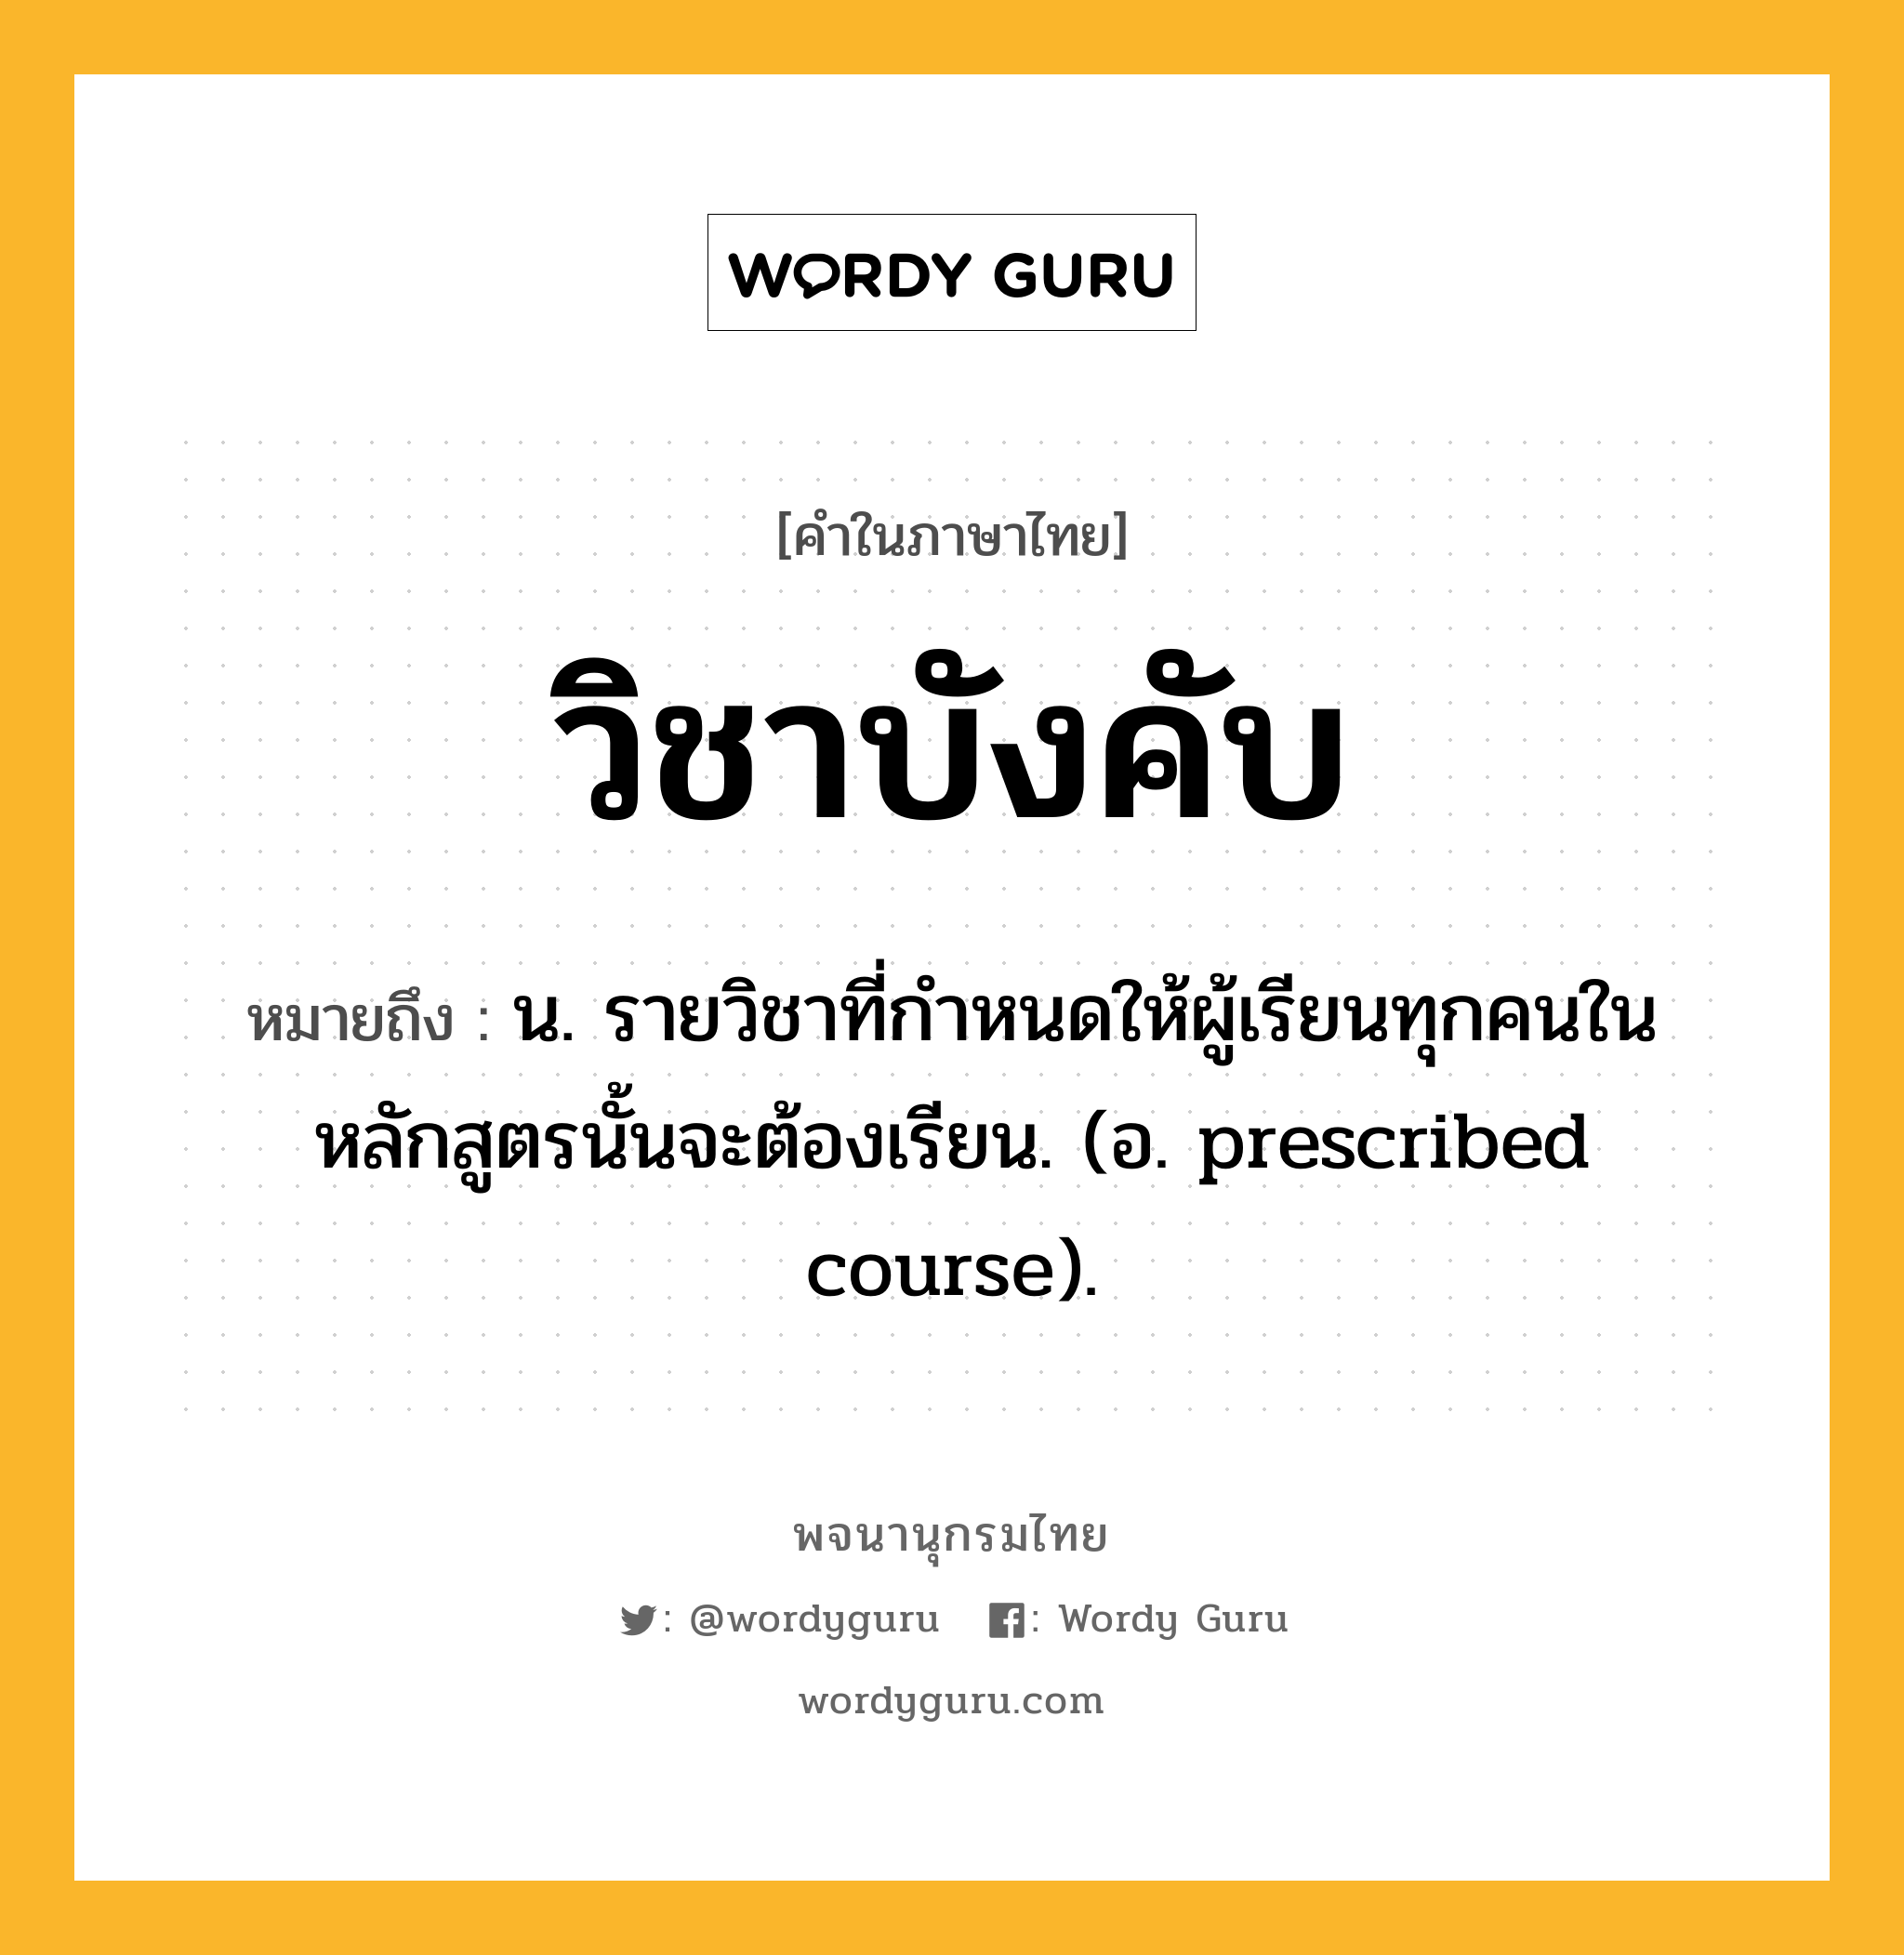 วิชาบังคับ หมายถึงอะไร?, คำในภาษาไทย วิชาบังคับ หมายถึง น. รายวิชาที่กำหนดให้ผู้เรียนทุกคนในหลักสูตรนั้นจะต้องเรียน. (อ. prescribed course).